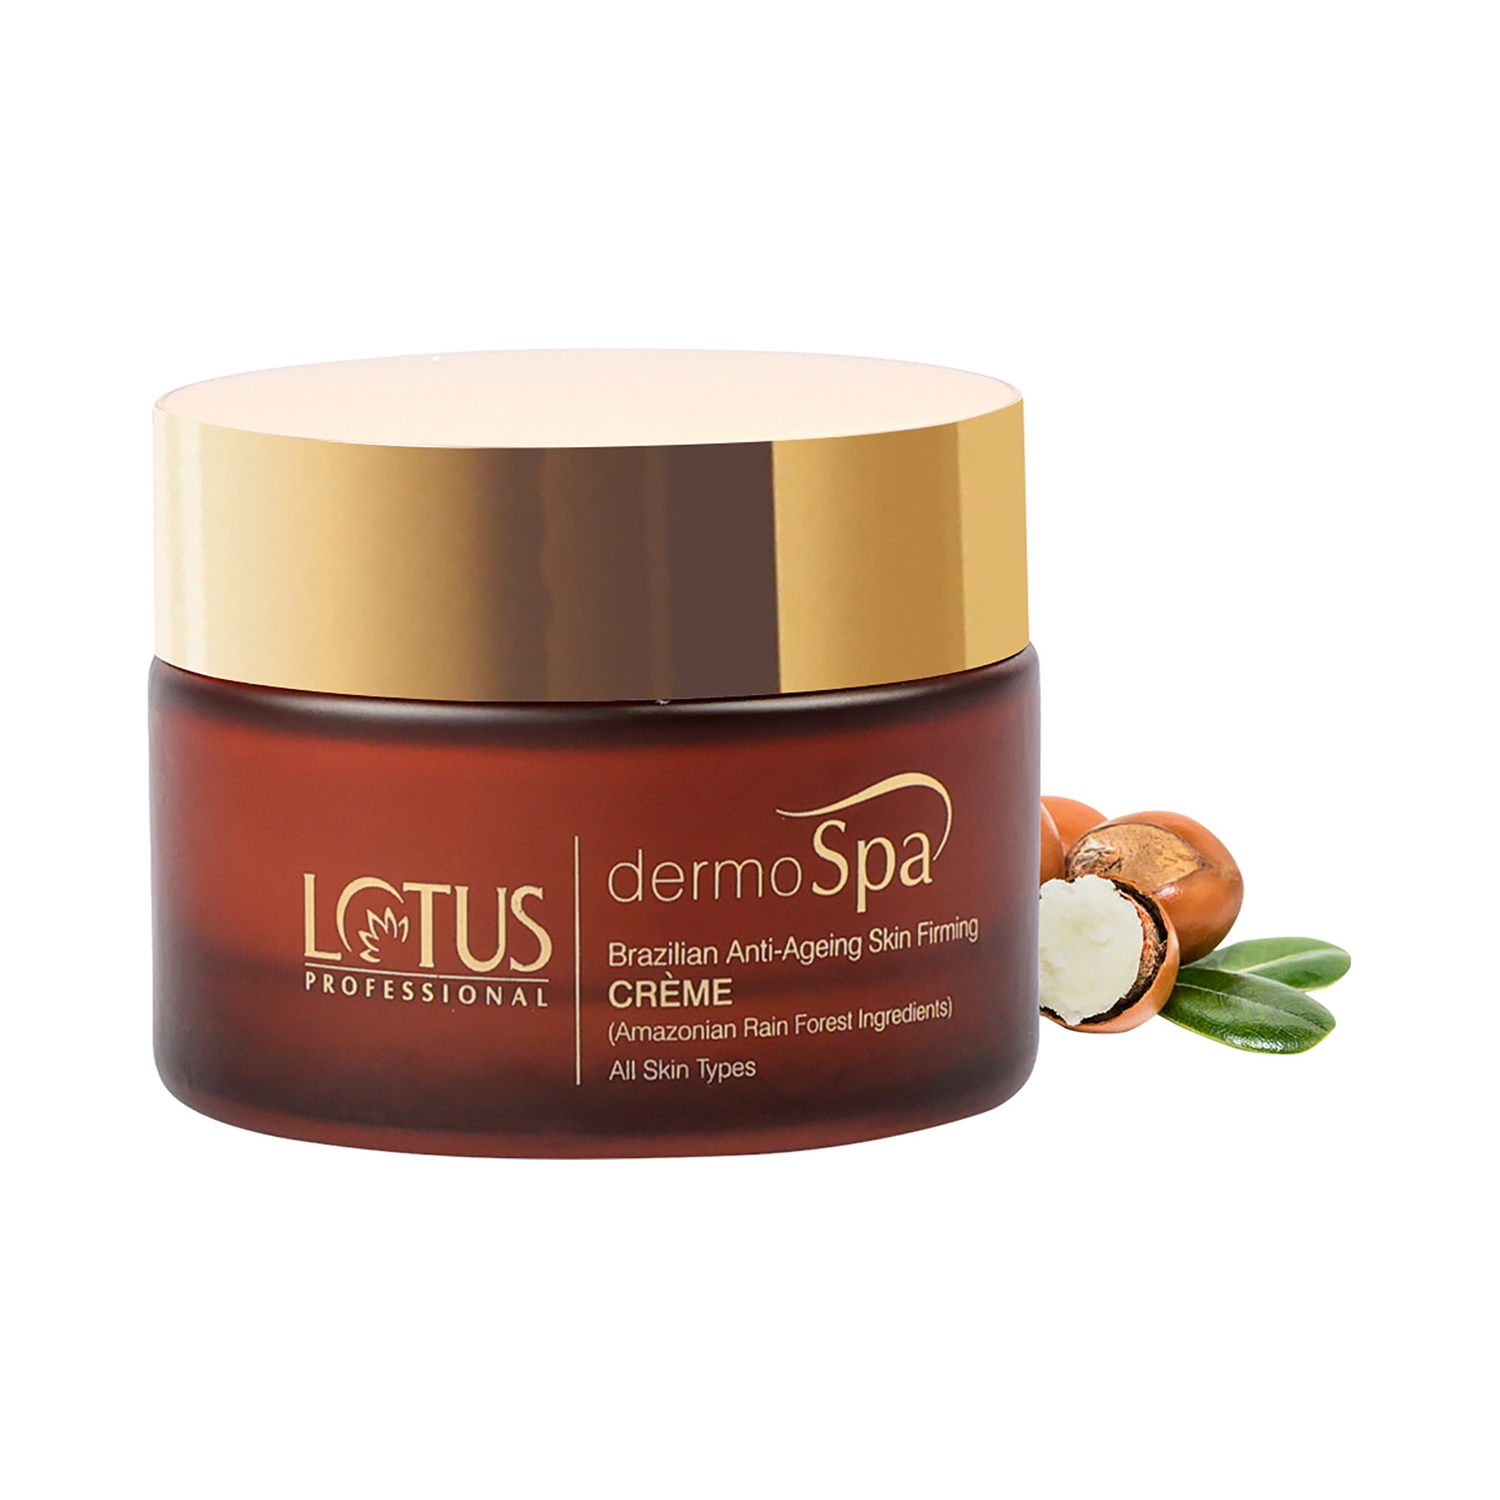 Lotus Professional | Lotus Professional Dermospa Brazilian Anti Ageing Skin Firming Creme (50g)